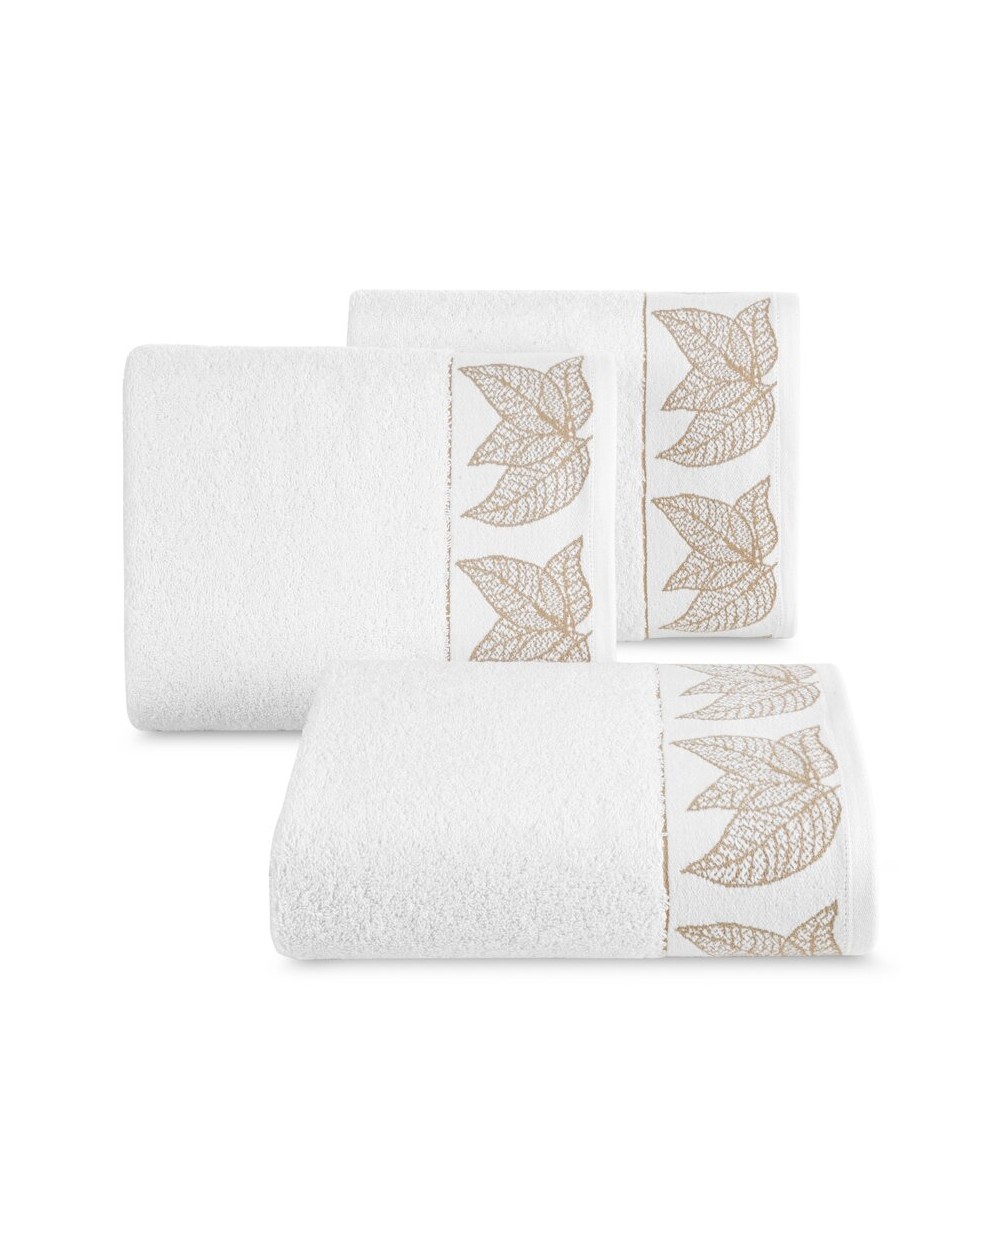 Ręcznik bawełna 50x90  Blanca 8 biały/złoty Eurofirany 